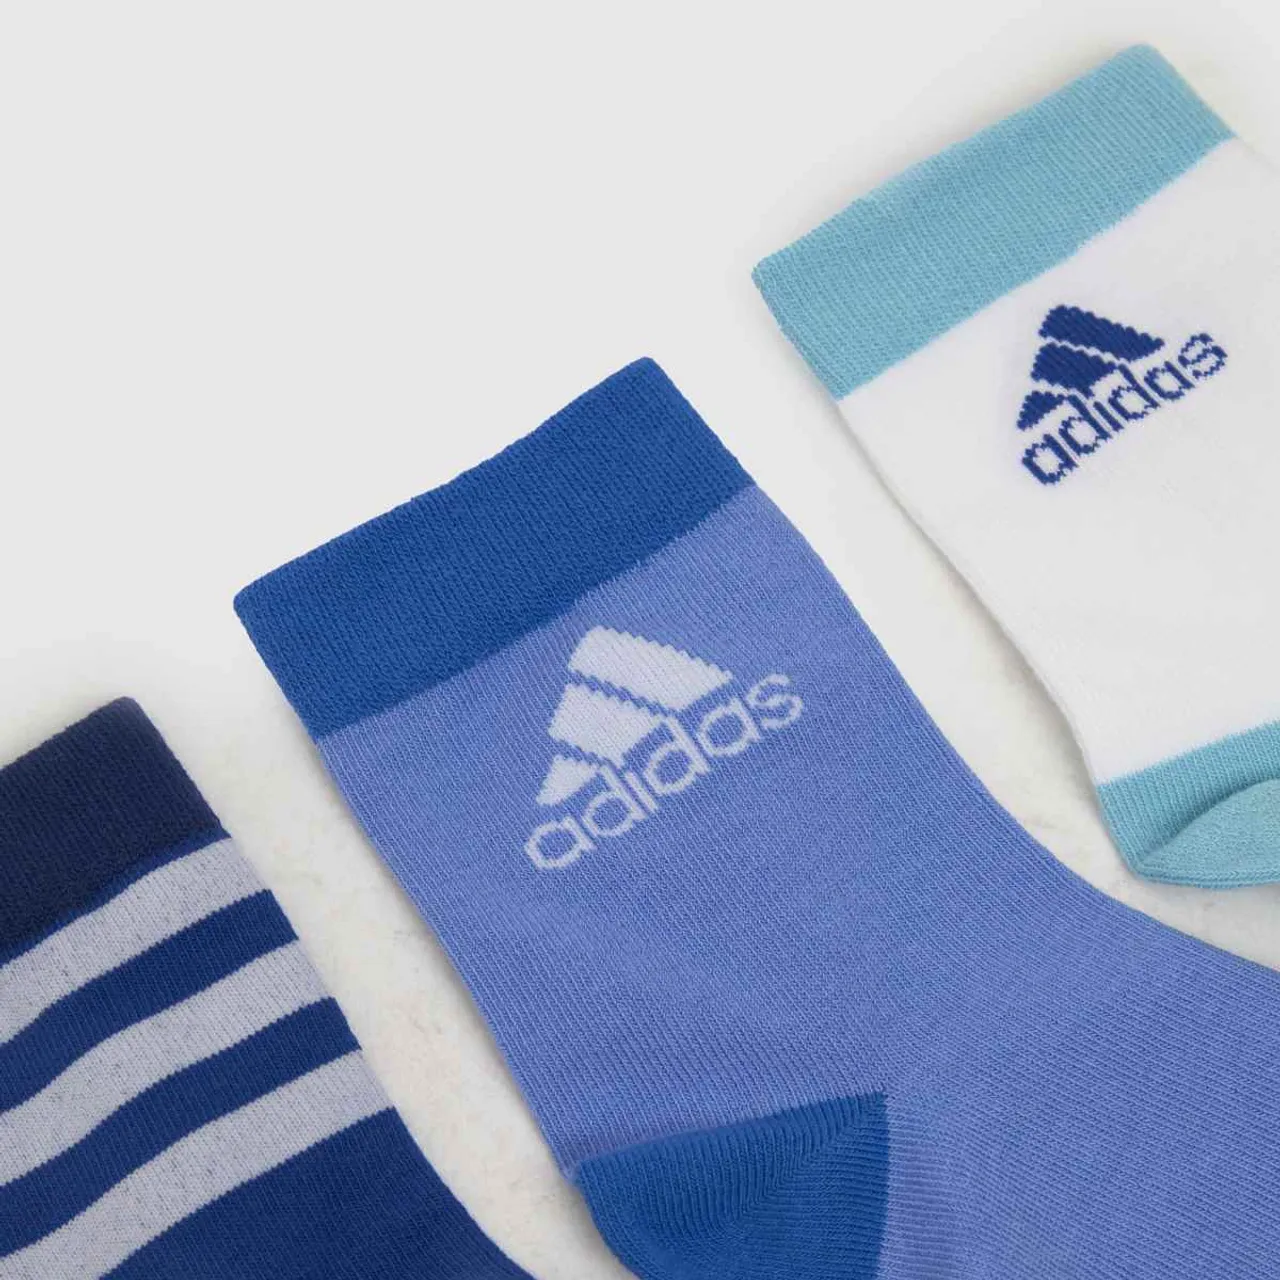 Adidas Blue Kids Ankle Socks 3 Pack